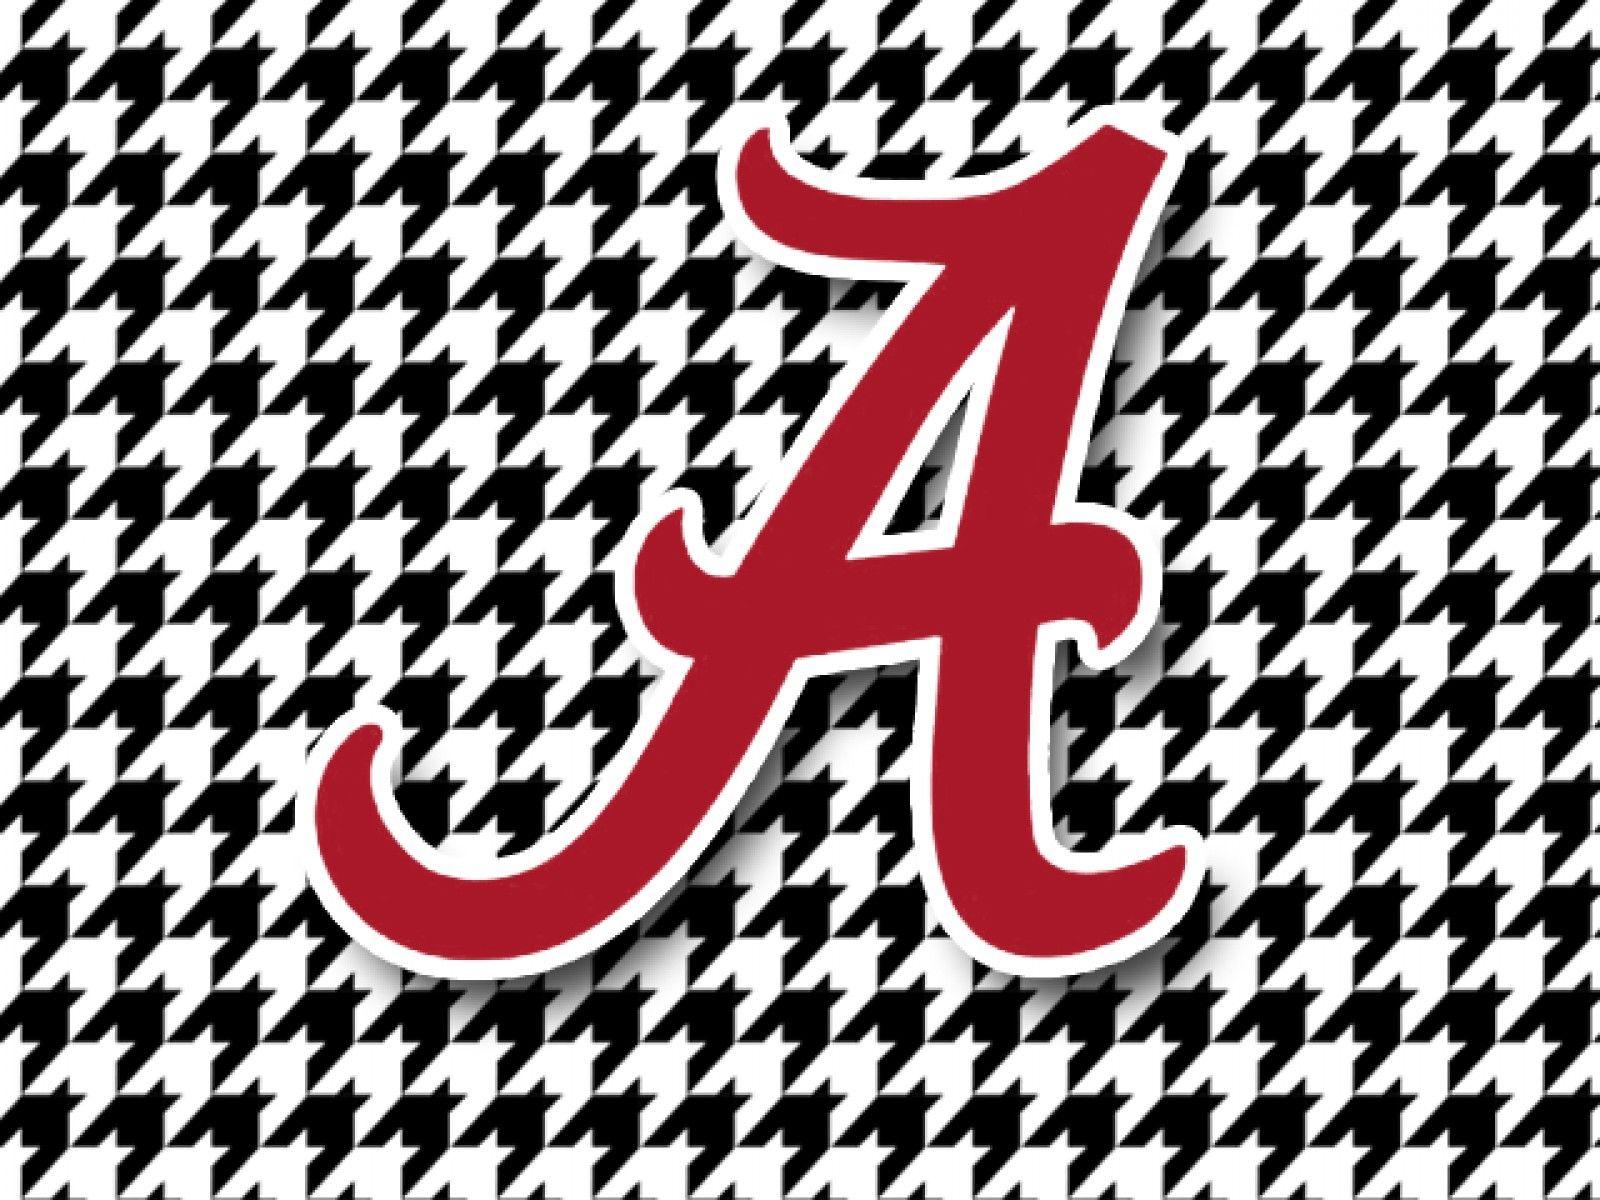 Black and White Bama Alabama Logo - Free University Of Alabama Logo, Download Free Clip Art, Free Clip ...